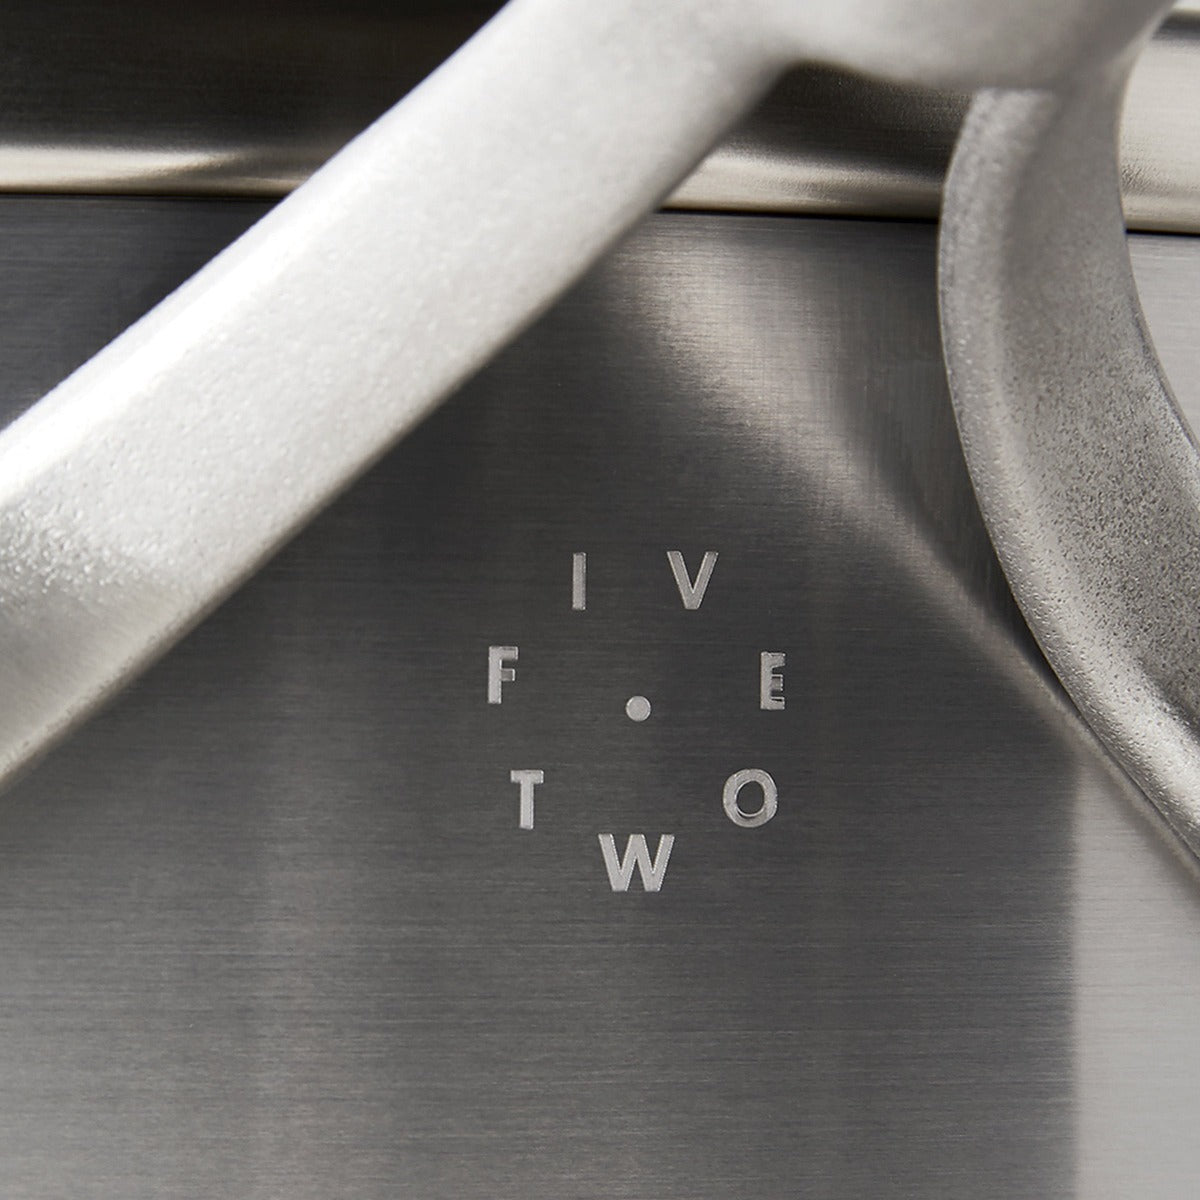 Five Two by GreenPan Ceramic Nonstick 10